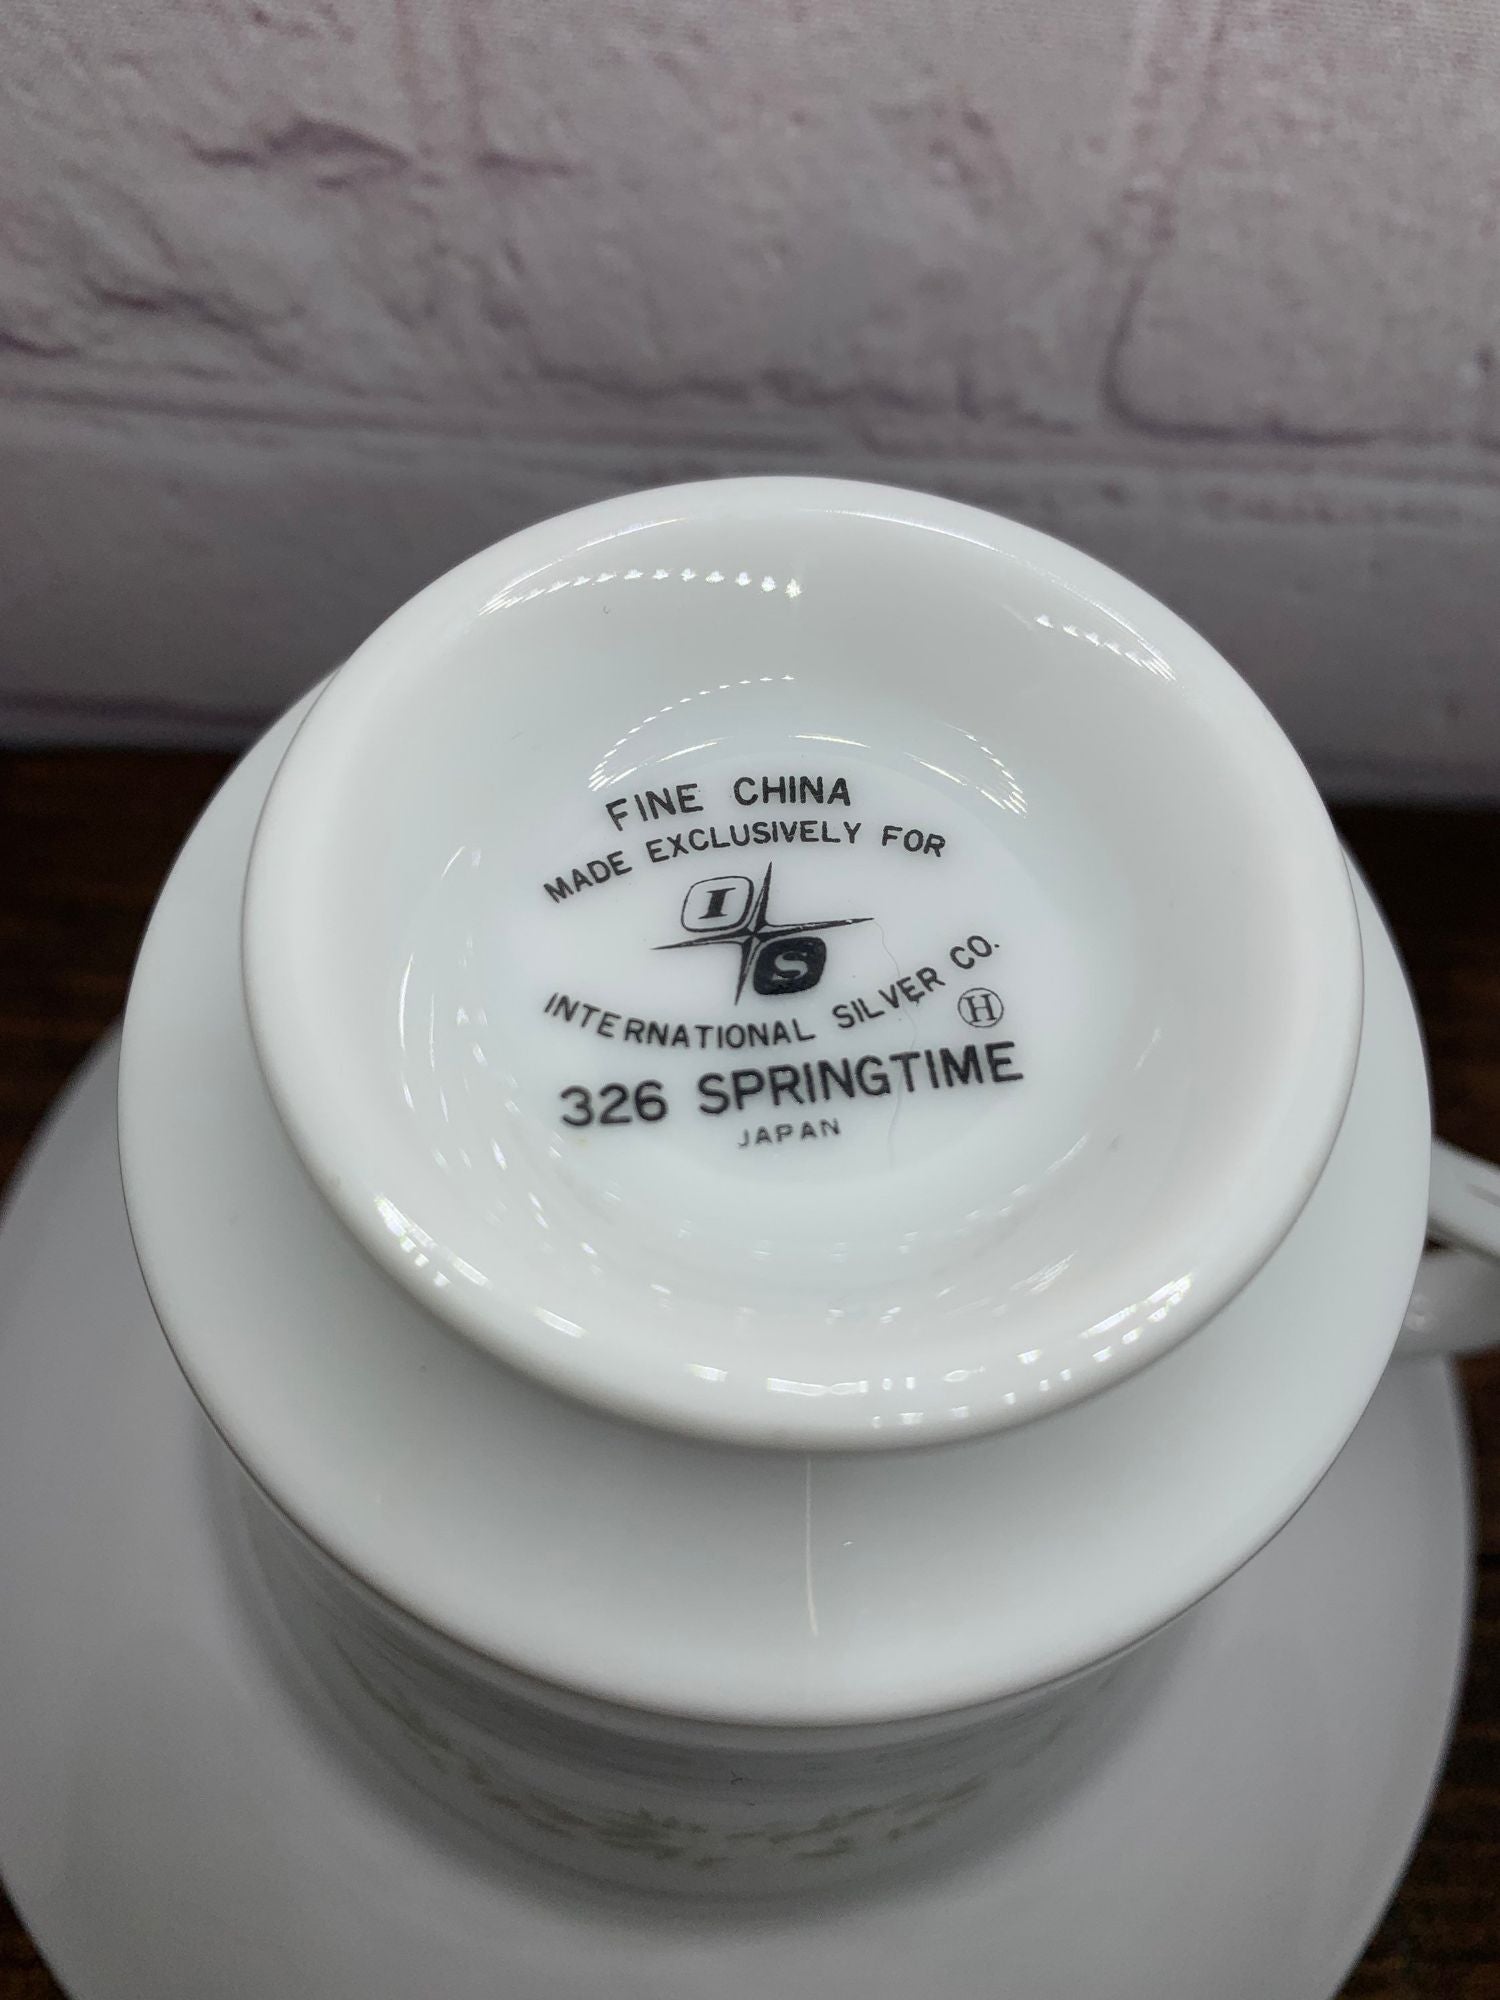 Vtg International Silver Co Bone China Teacup/Saucer Springtime 326 - Japan